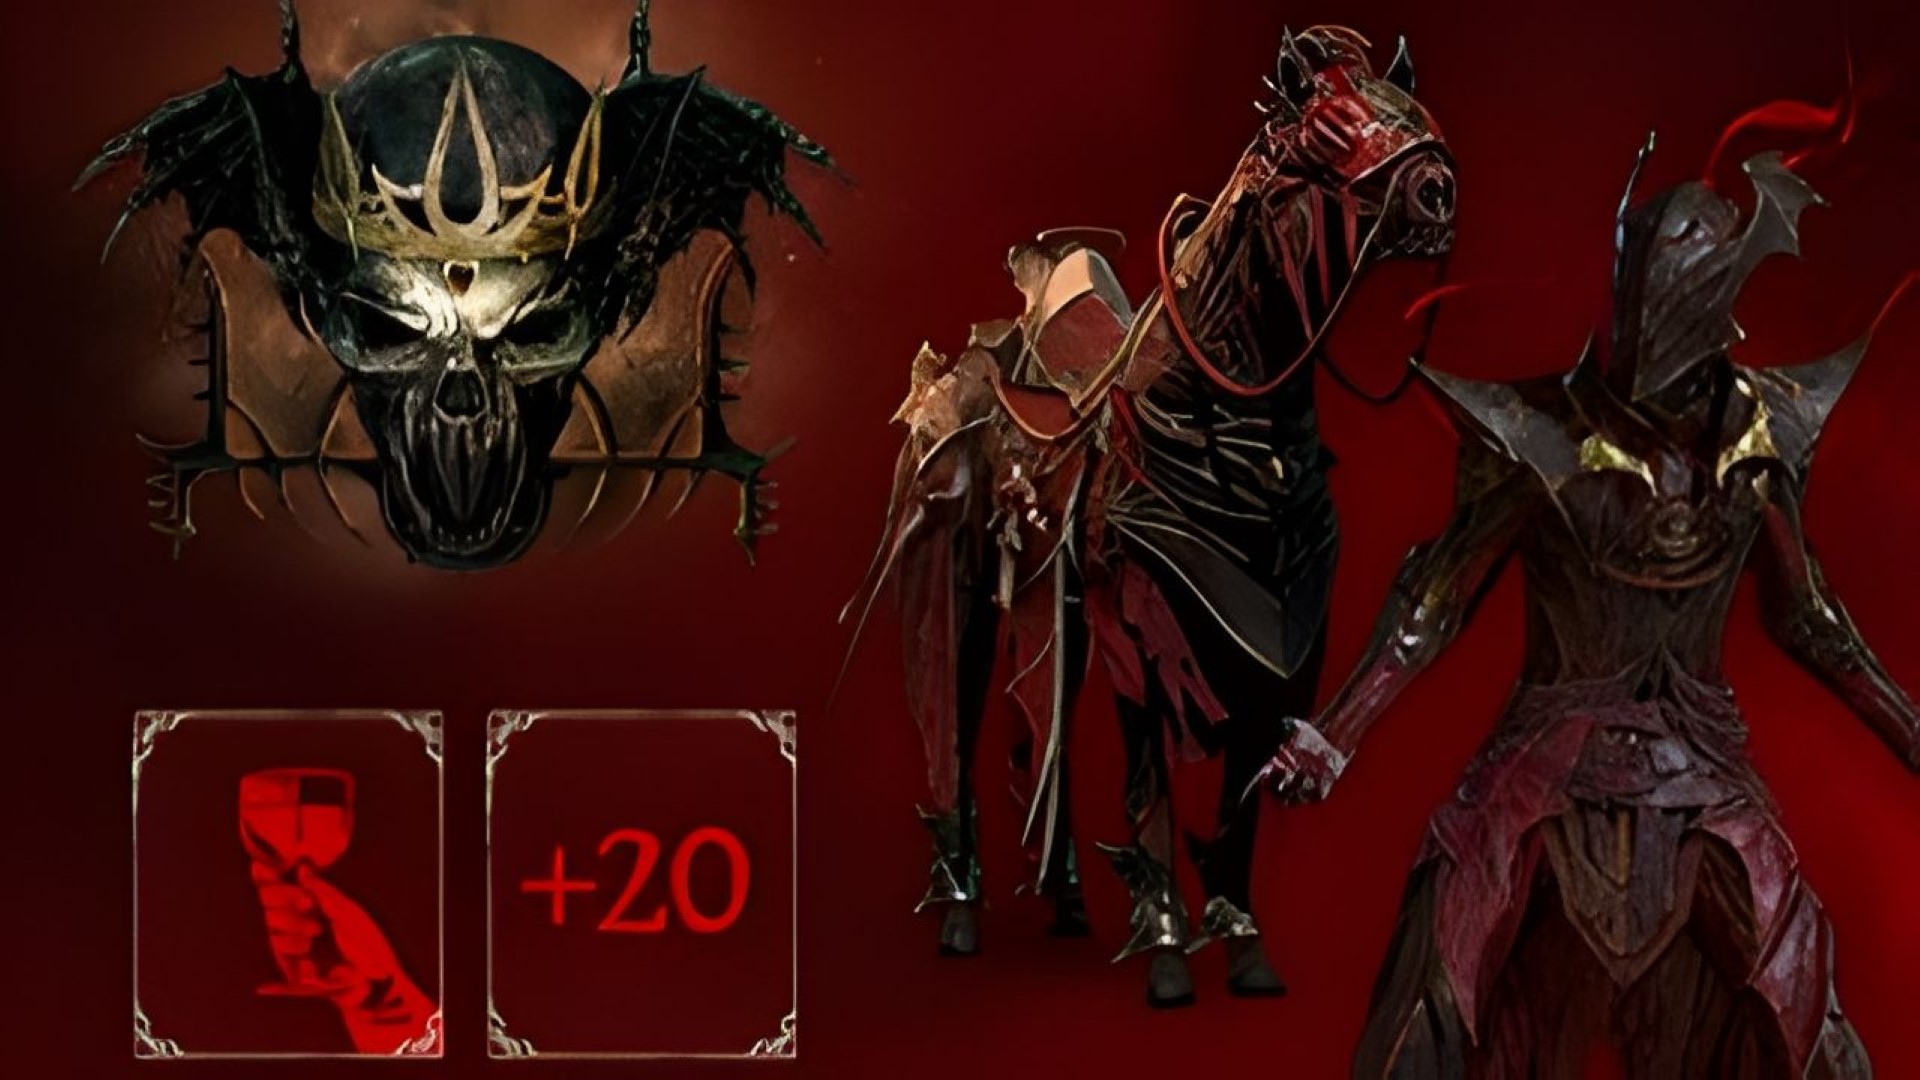 Diablo 4 battle pass explained